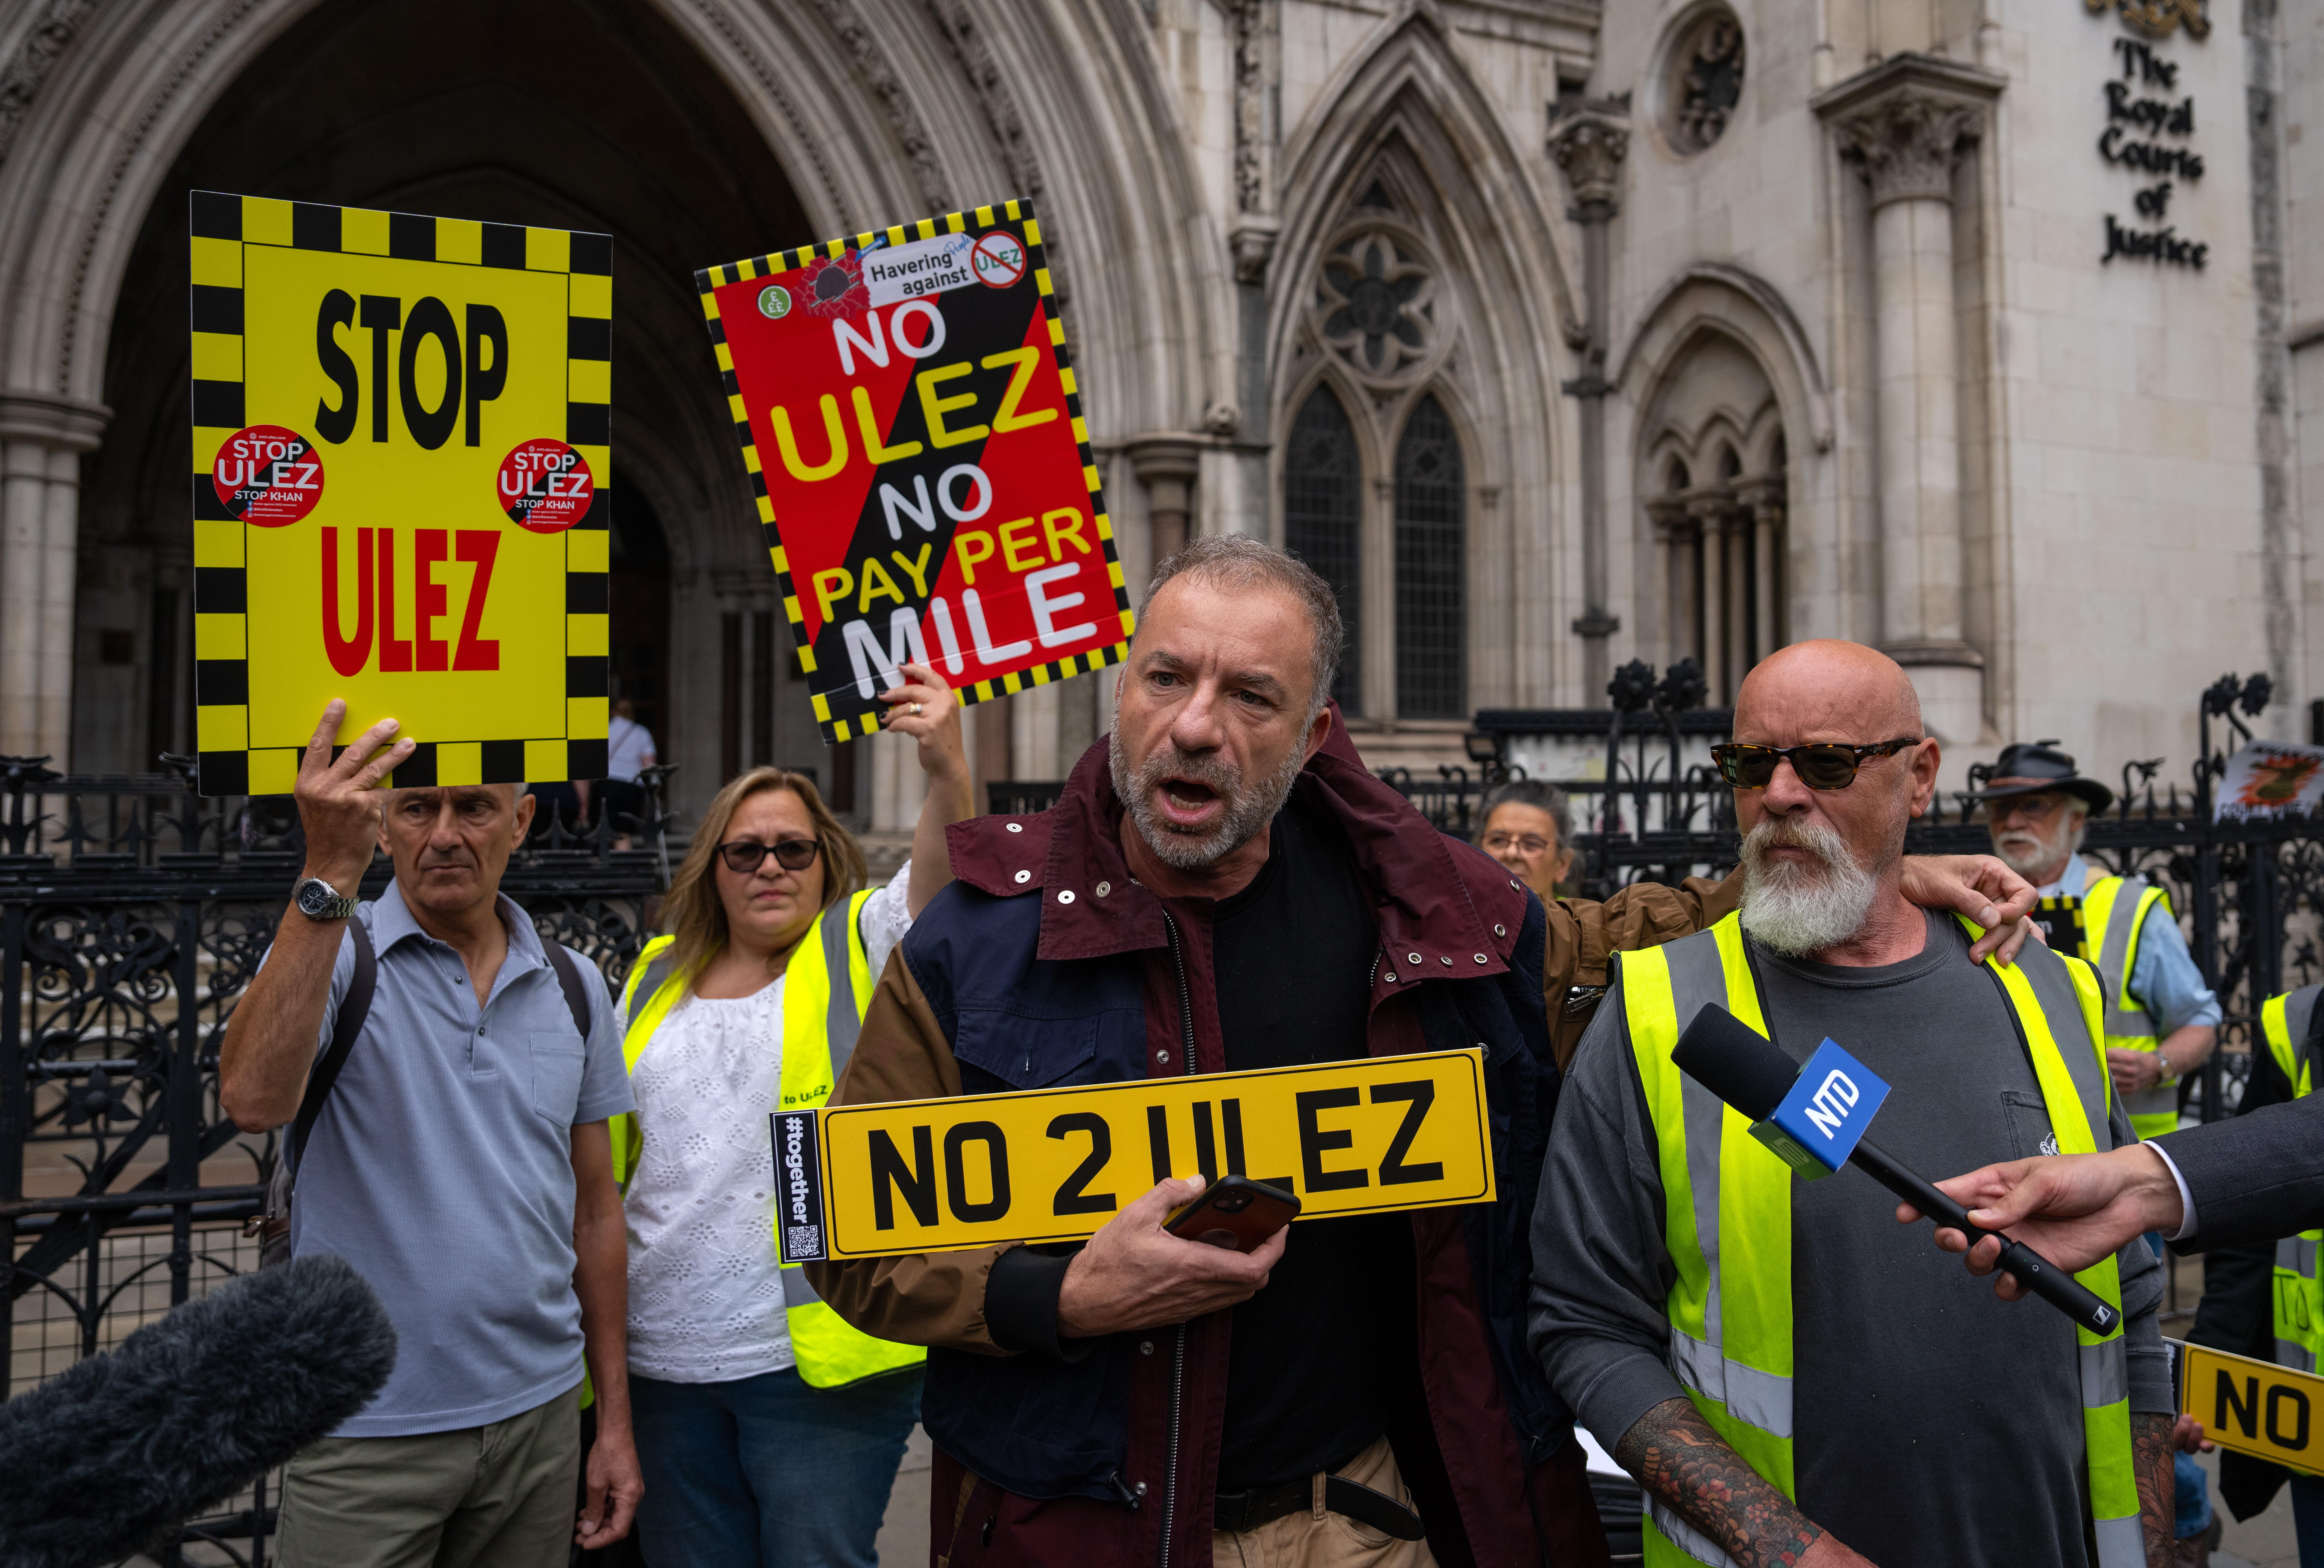 Der Ulez-Streit ist in der Labour-Partei zu einem offenen Bürgerkrieg ausgebrochen